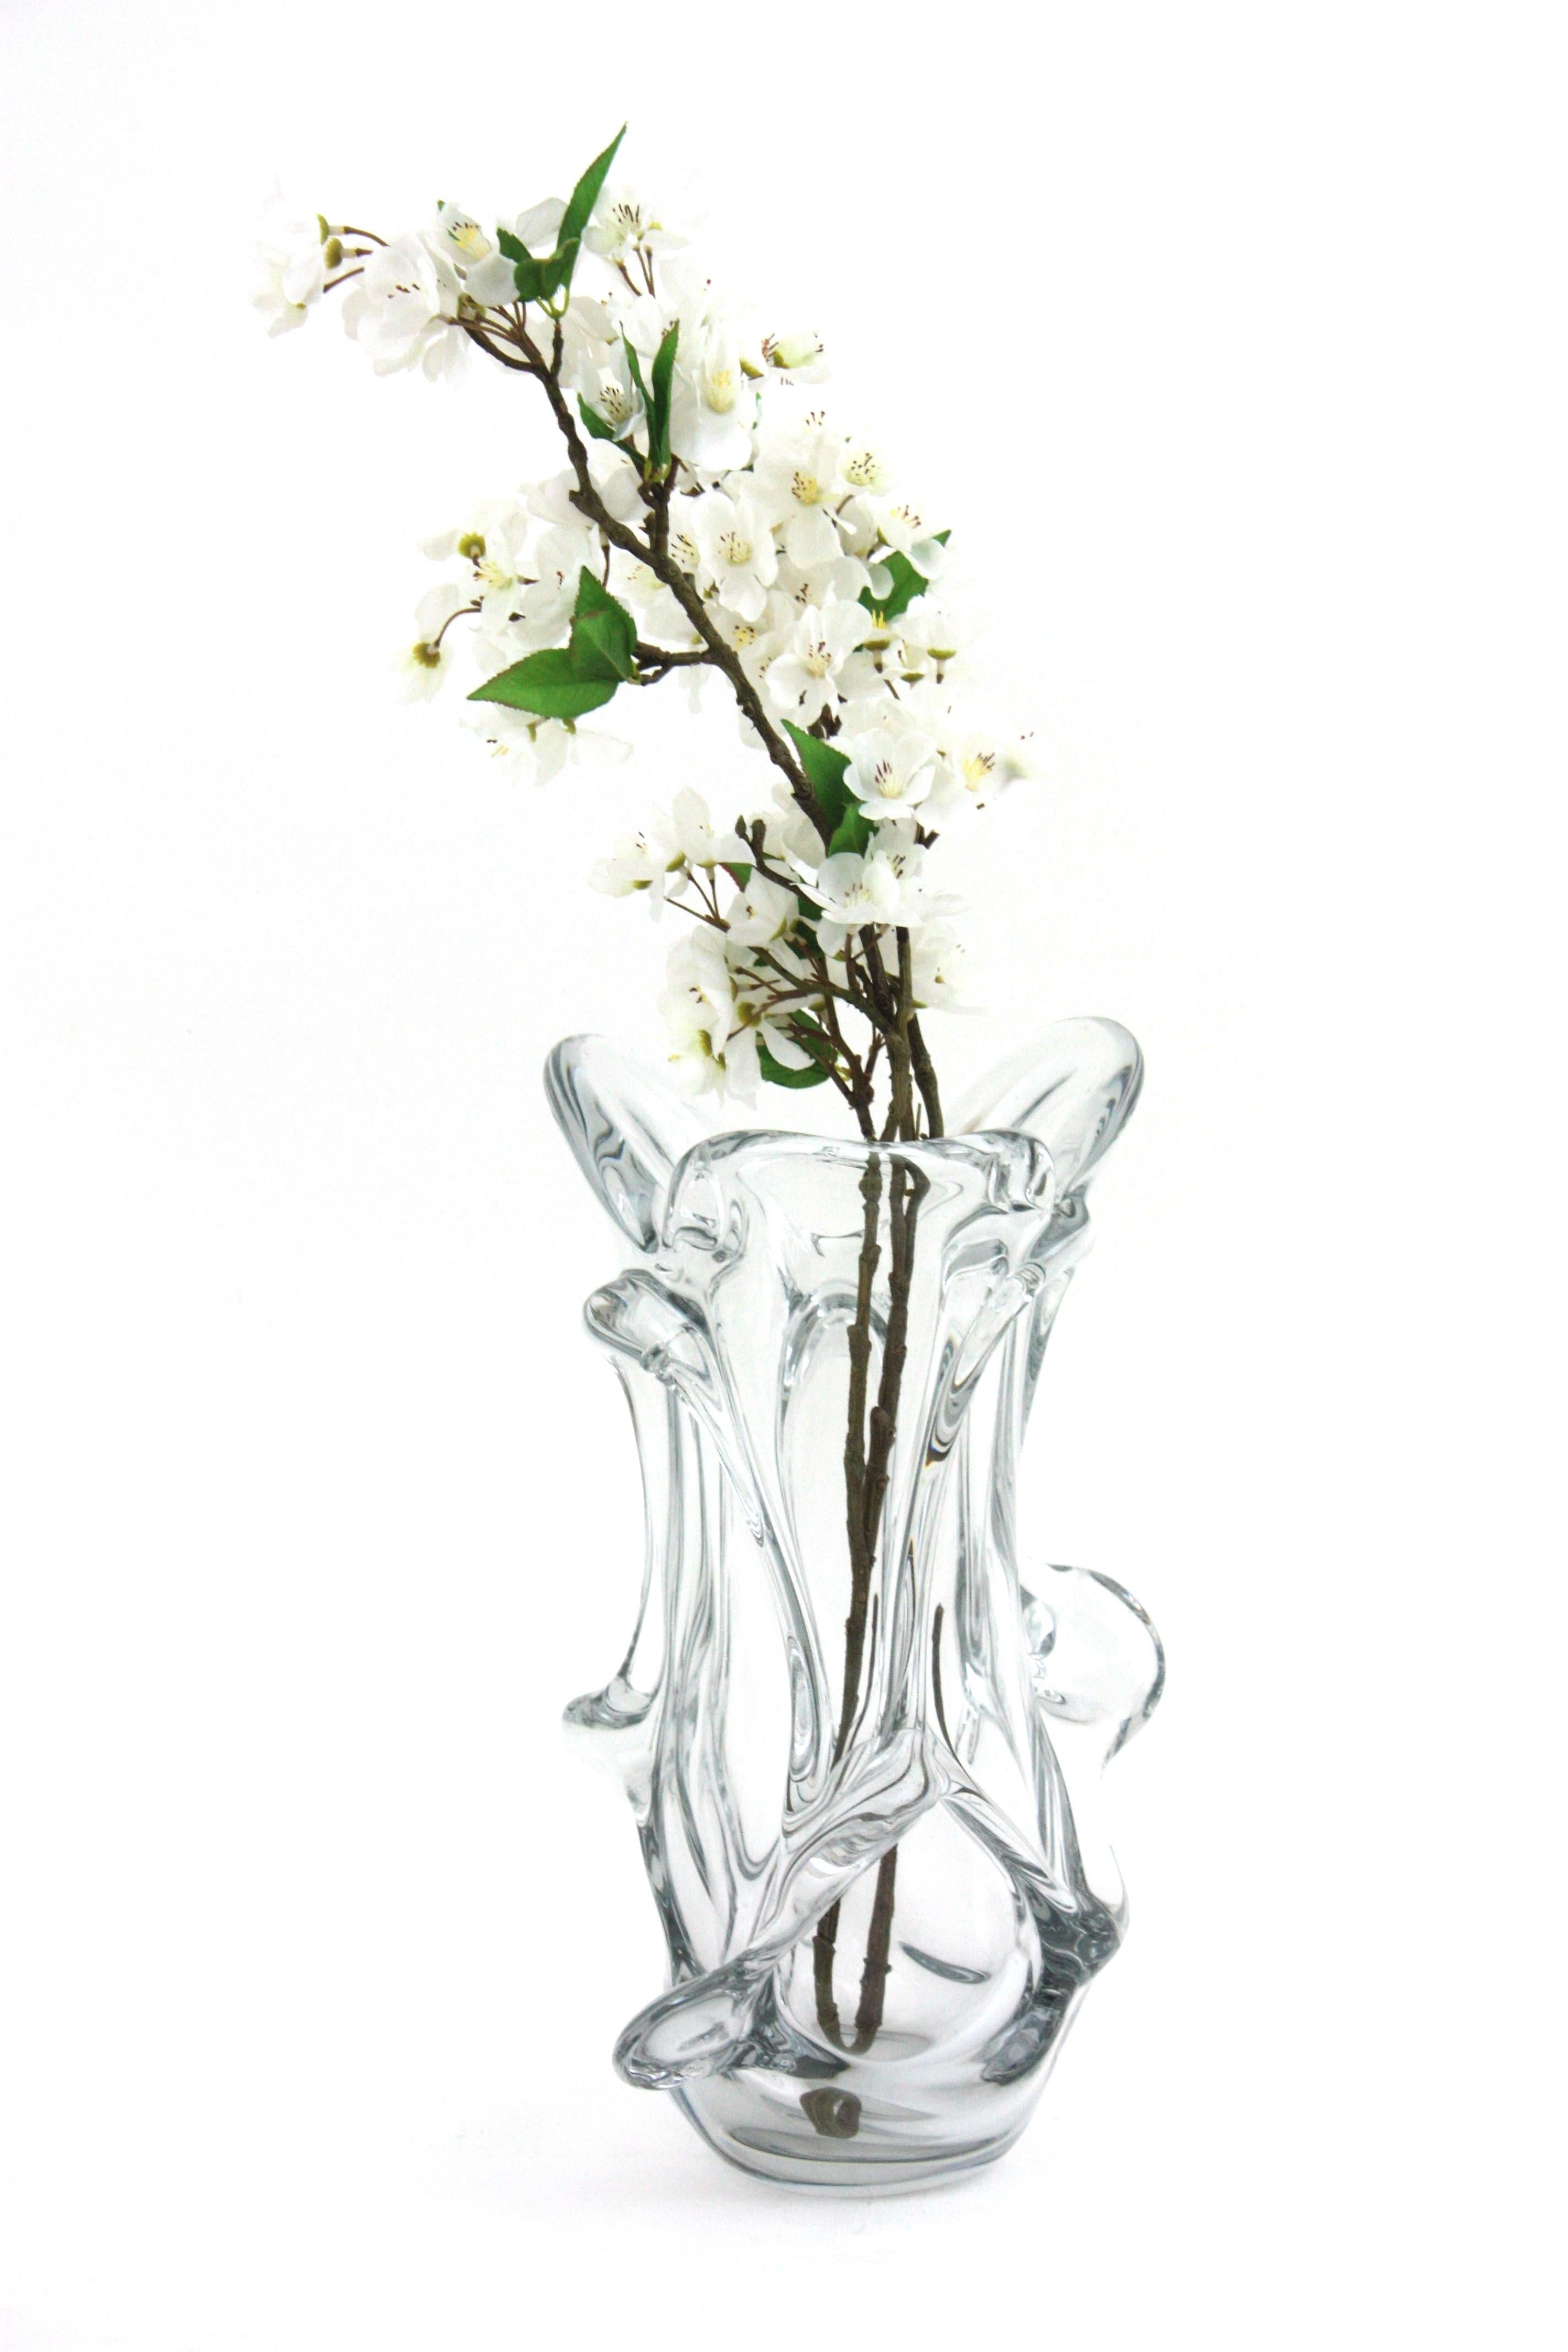 Sculptural Organic Modern Murano Clear Art Glass Vase, Italie, années 1950.
Vase en verre soufflé transparent de Murano au design organique qui attire le regard. Il présente un beau design avec des formes somptueuses et des détails tirés au